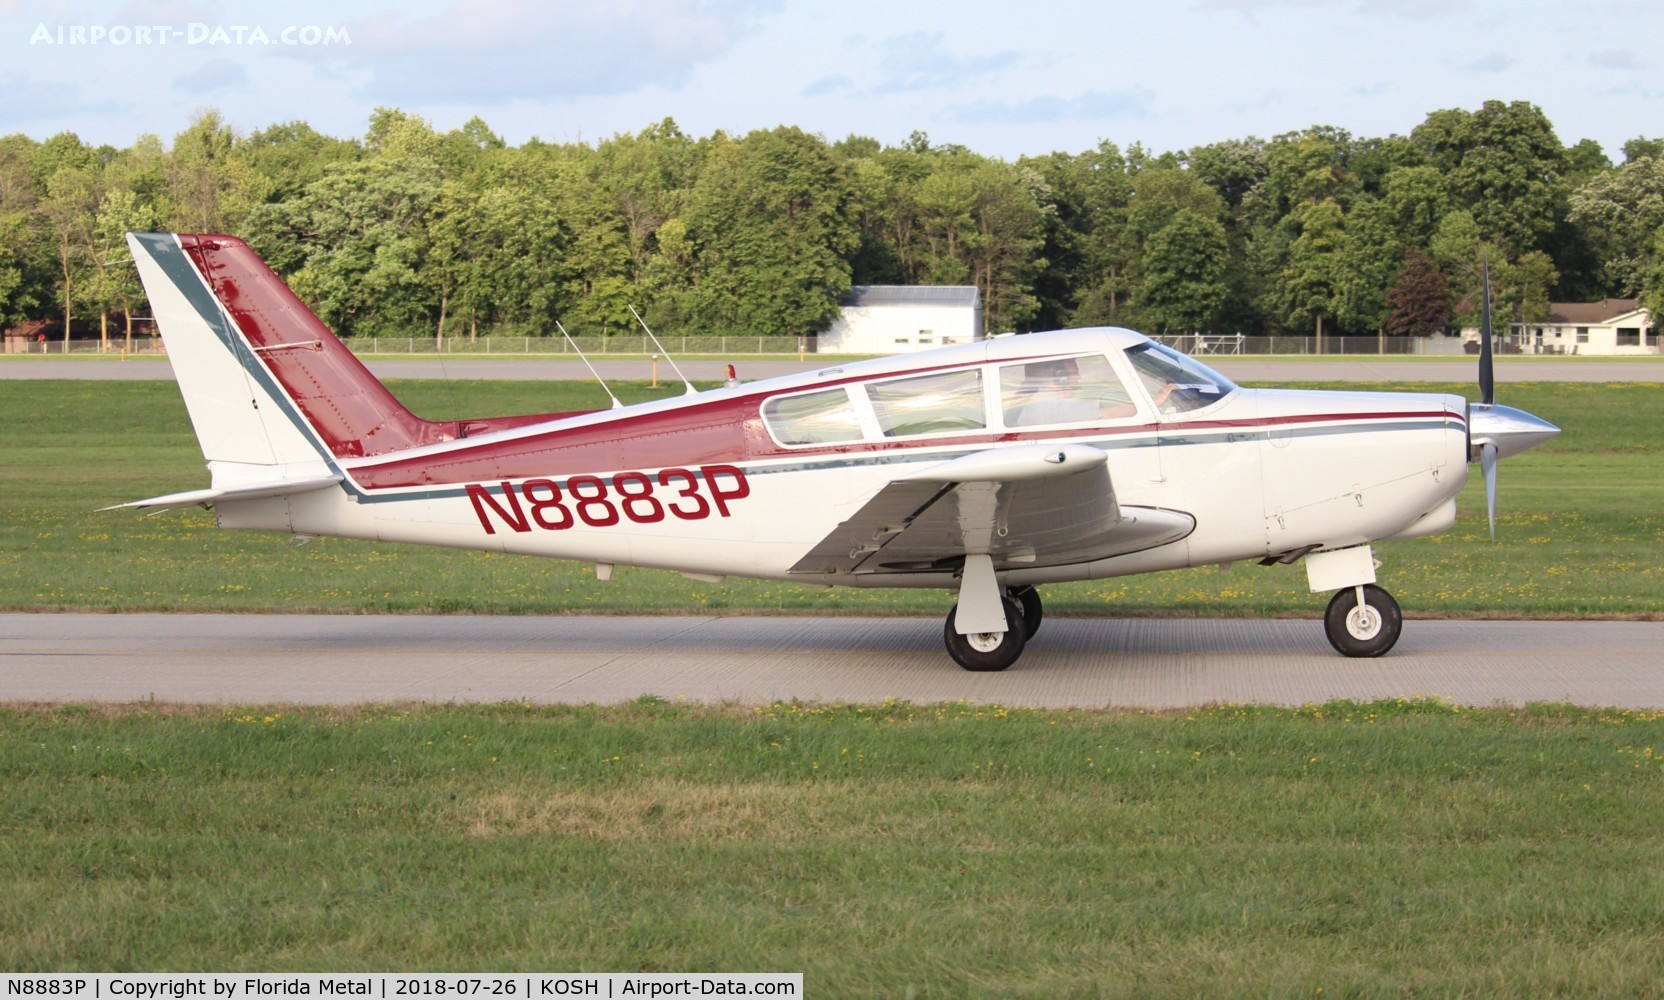 N8883P, 1965 Piper PA-24-260 Comanche C/N 24-4342, PA-24